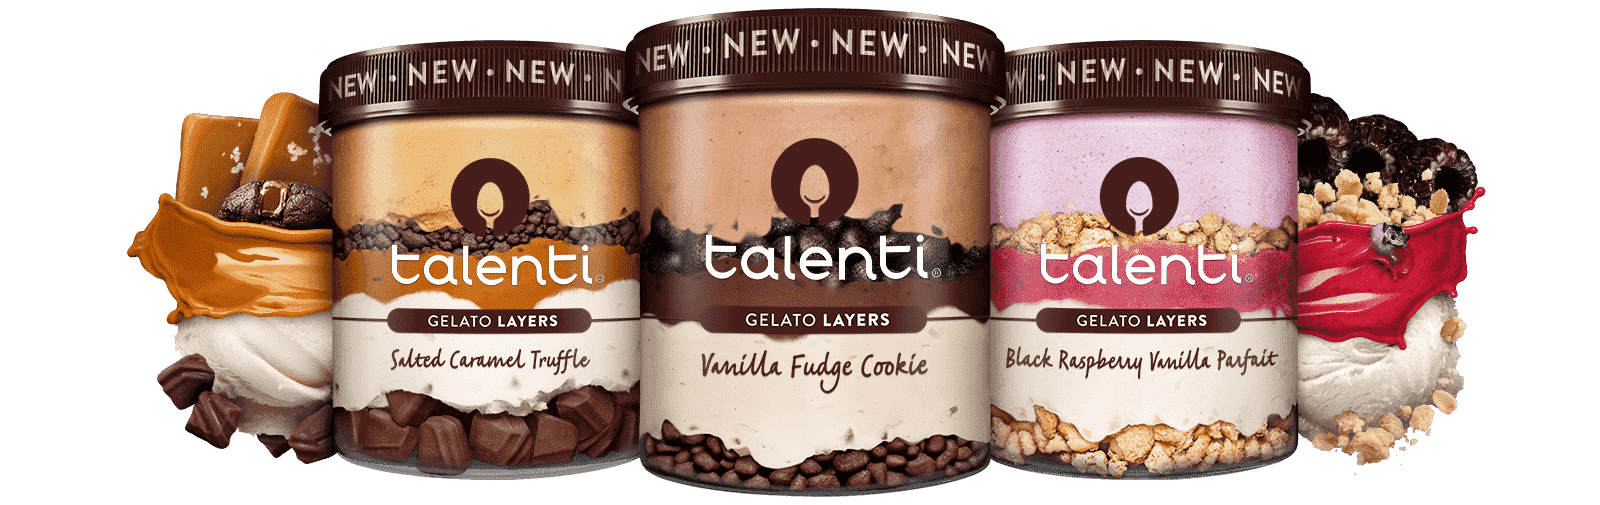 Talenti Released Gelato Layers In Seven Brand New Flavors